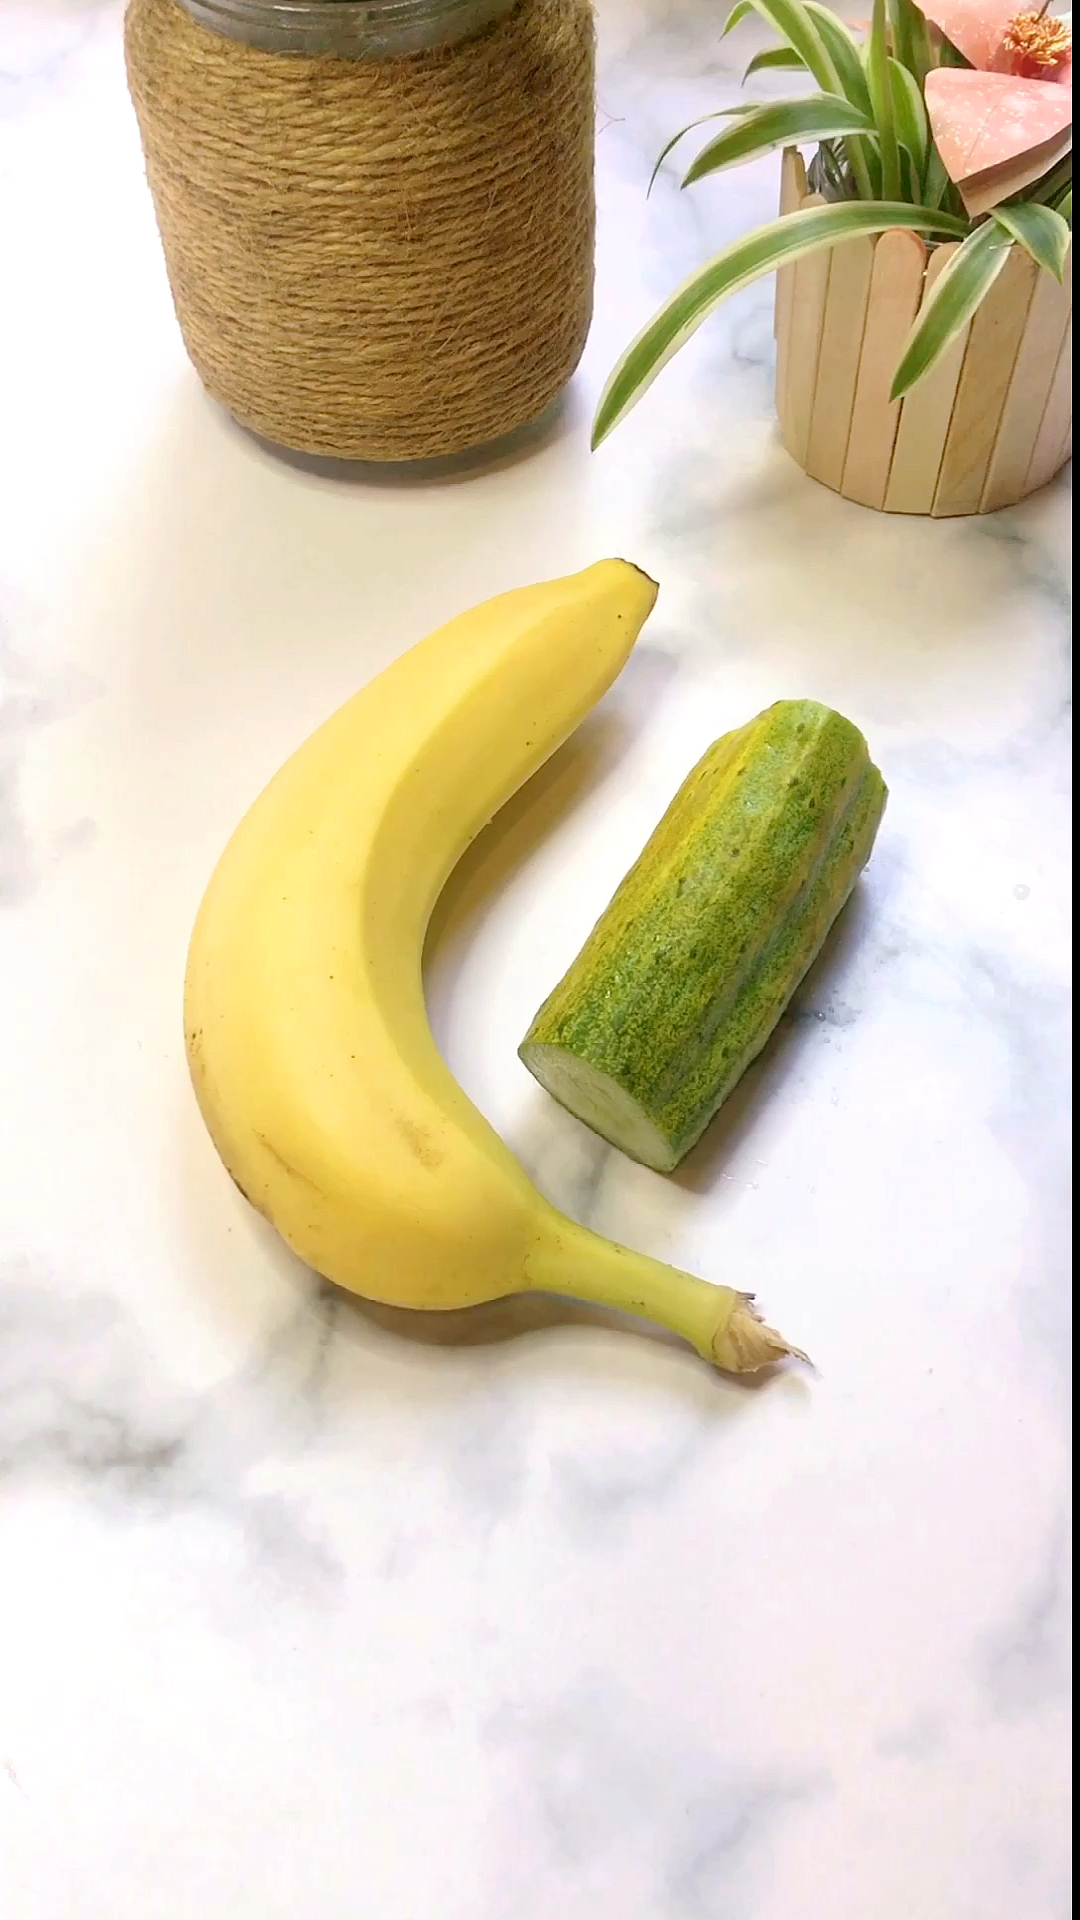 黄瓜打开是香蕉的图片图片